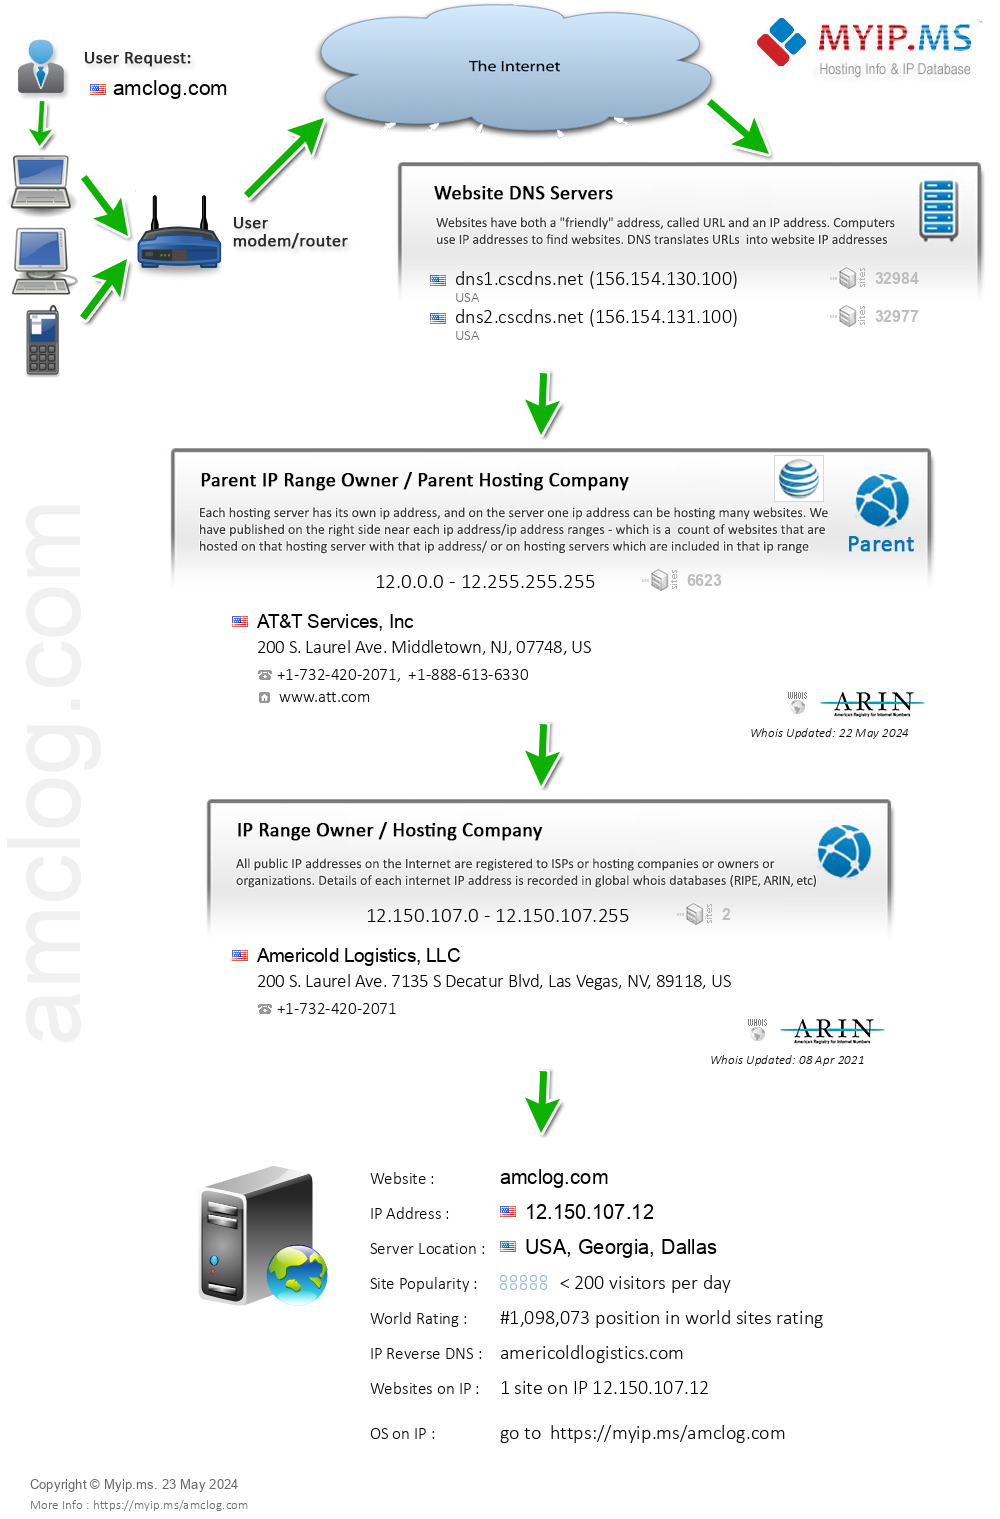 Amclog.com - Website Hosting Visual IP Diagram